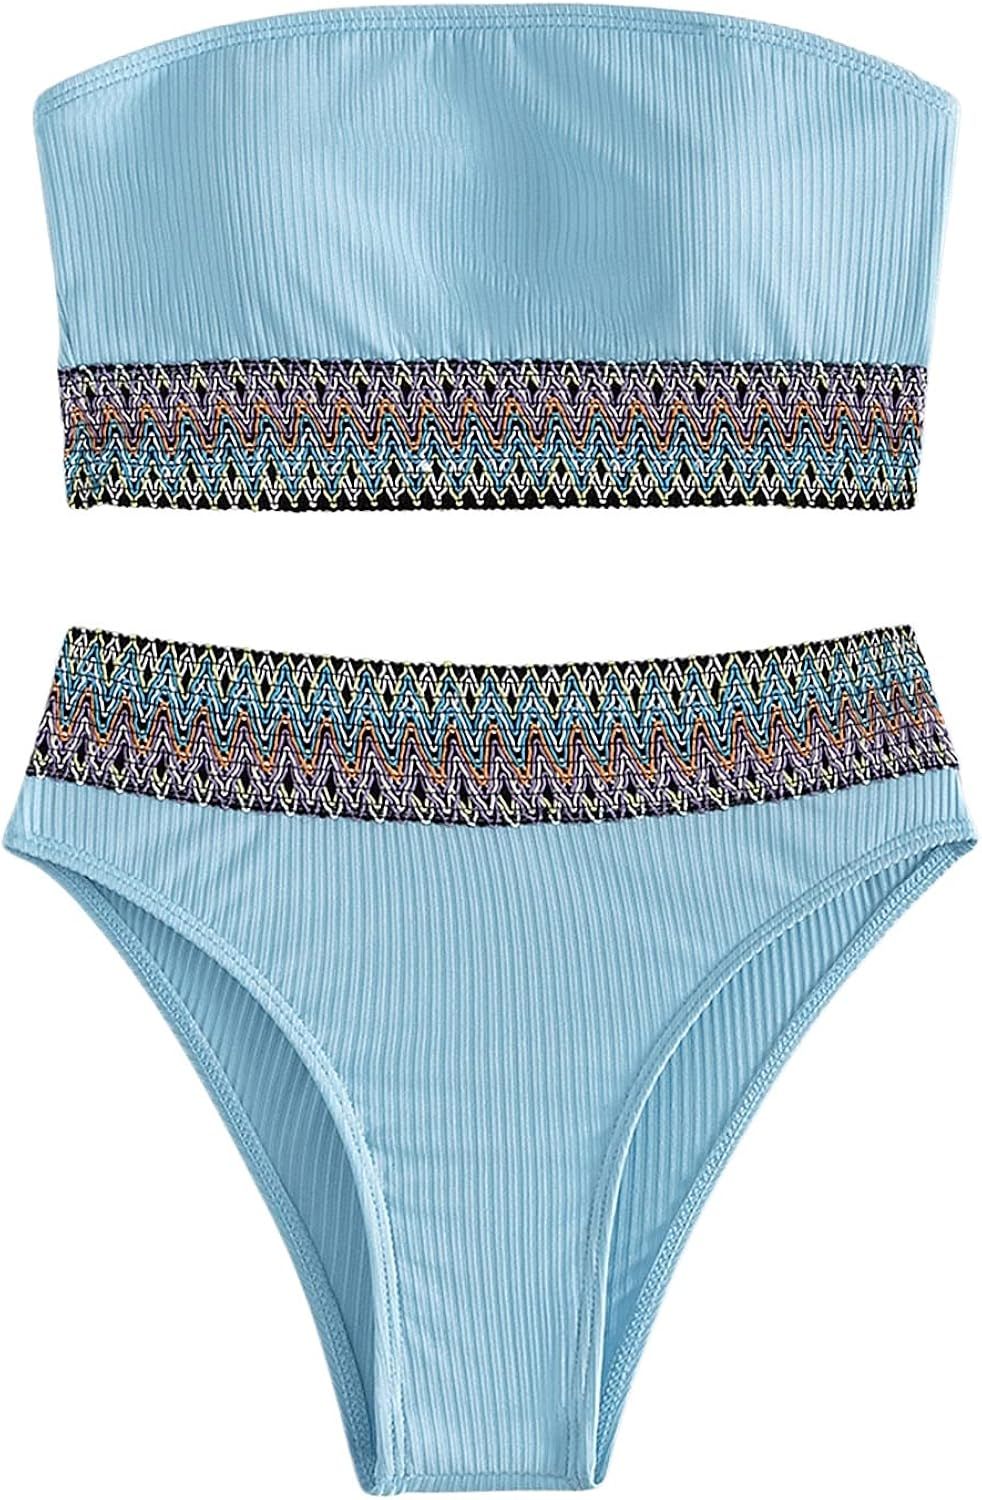 SweatyRocks Women's Bathing Suits Striped Bandeau Bikini high Waisted Swimsuits Swimwear Set | Amazon (US)